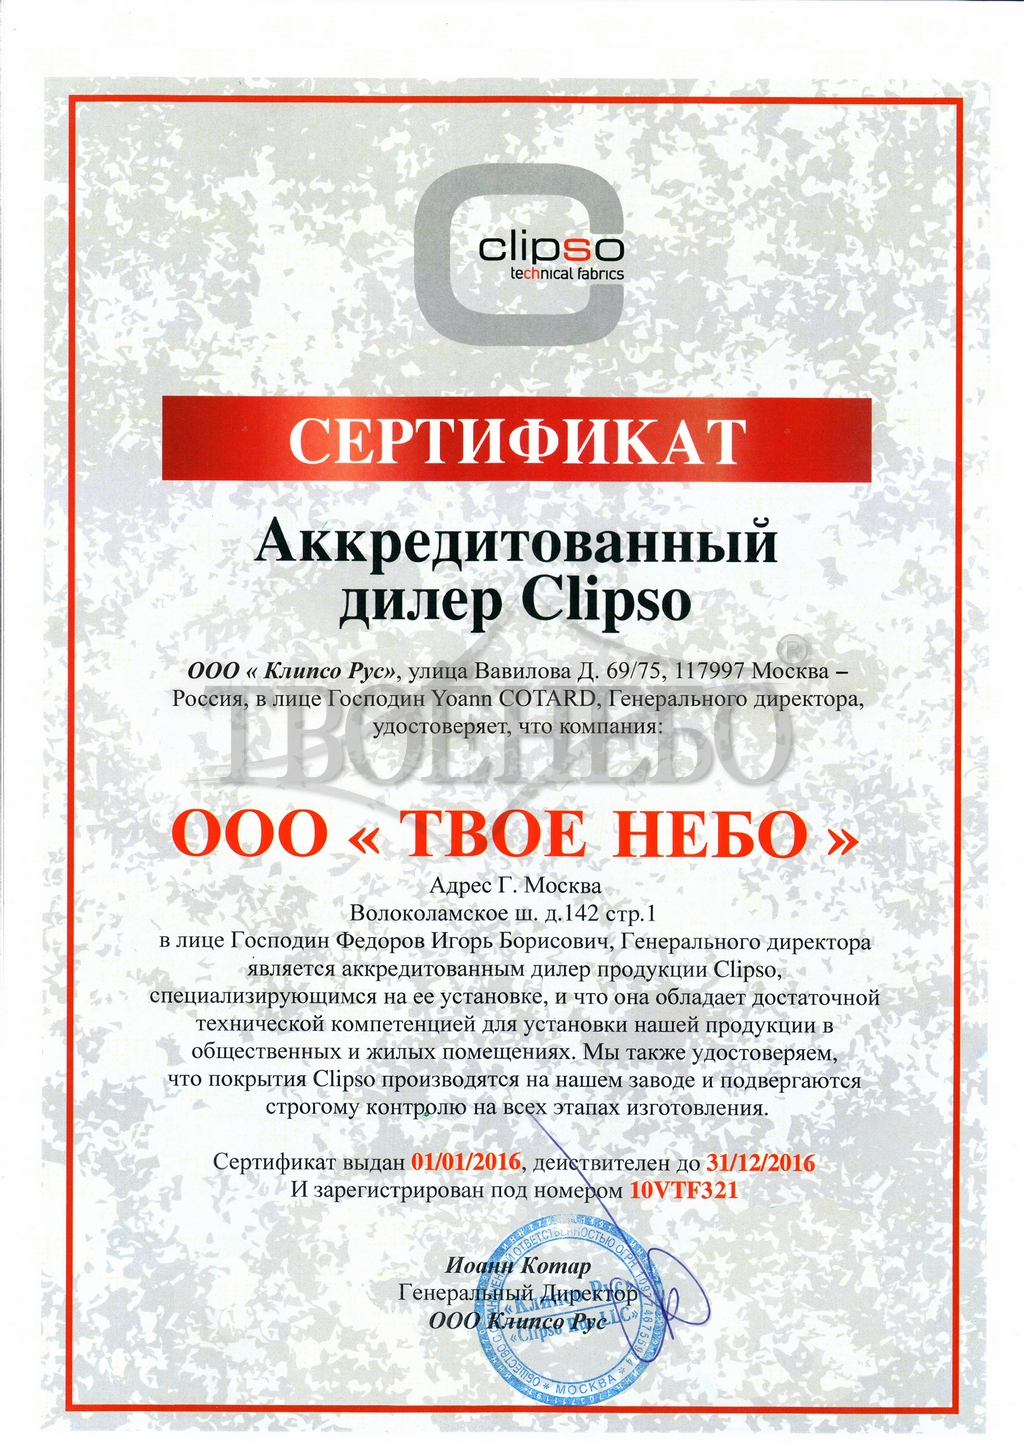 сертификат официального дилера Clipso в России